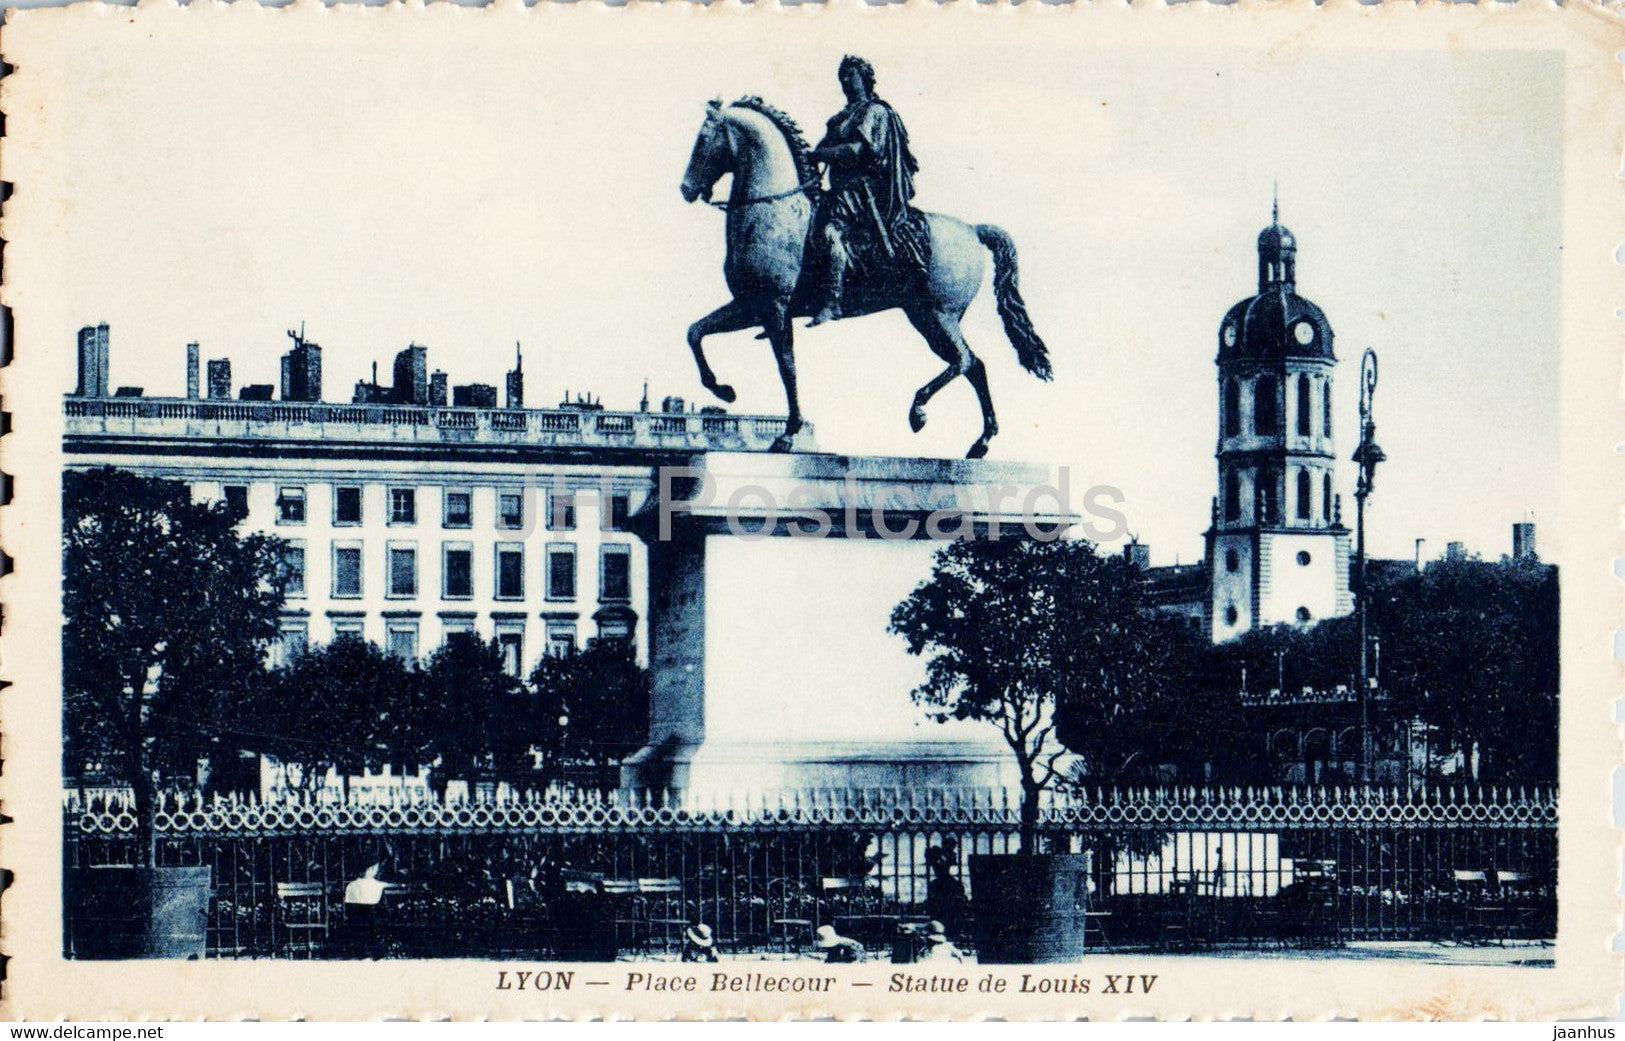 Lyon - Place Bellecour - Statue de Louis XIV - horse - old postcard - 1934 - France - used - JH Postcards